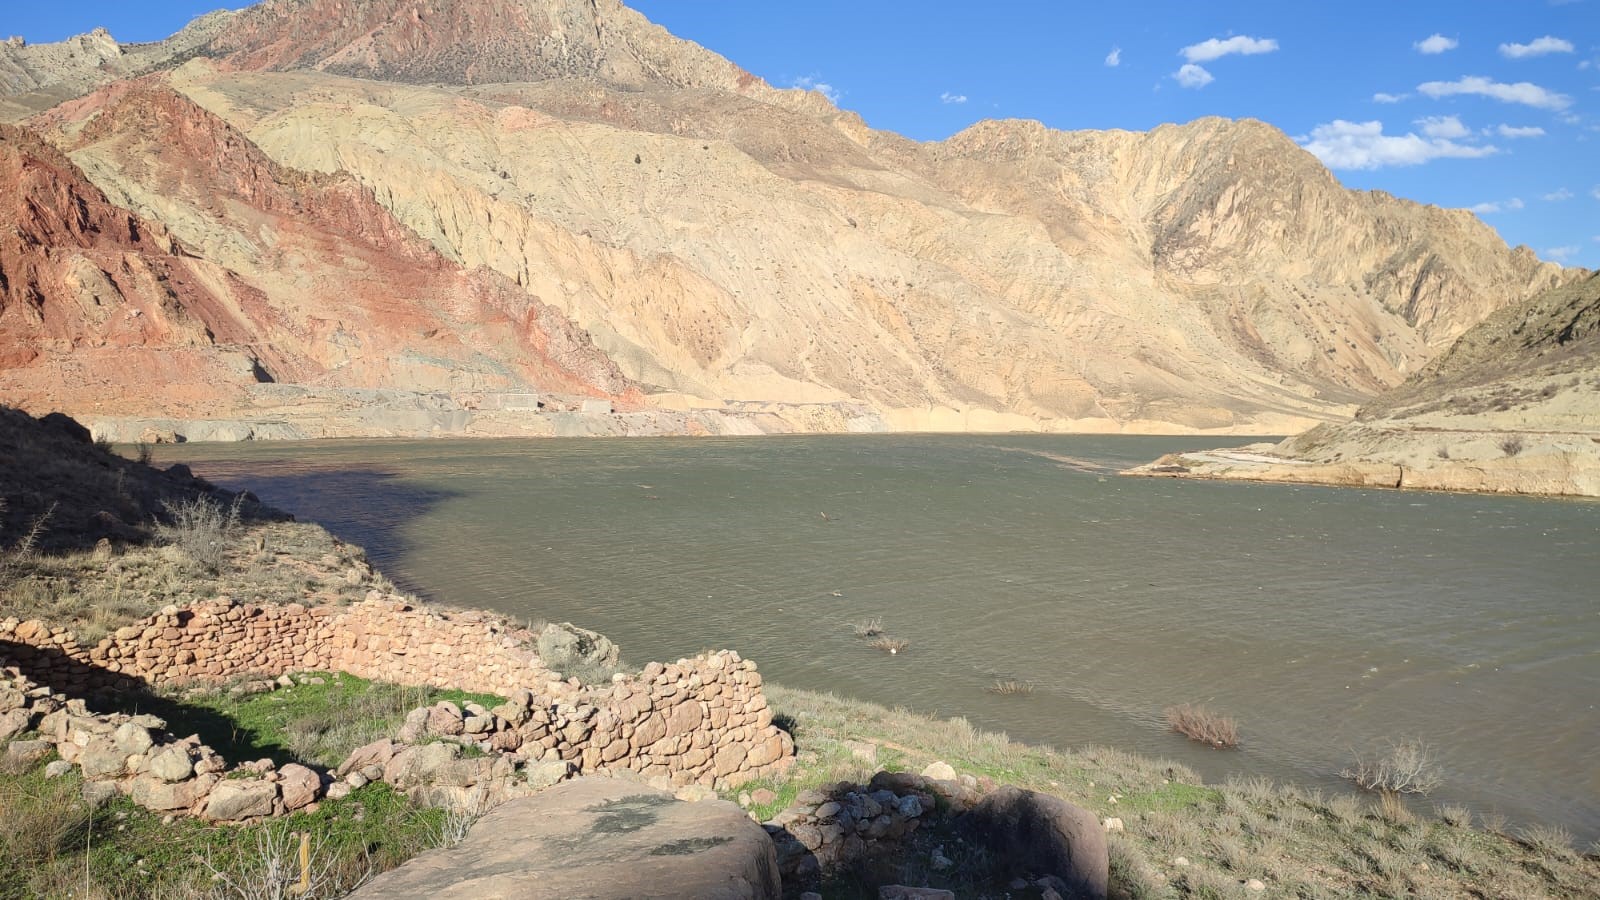 Yusufeli baraj suları Erzurum sınırına dayandı